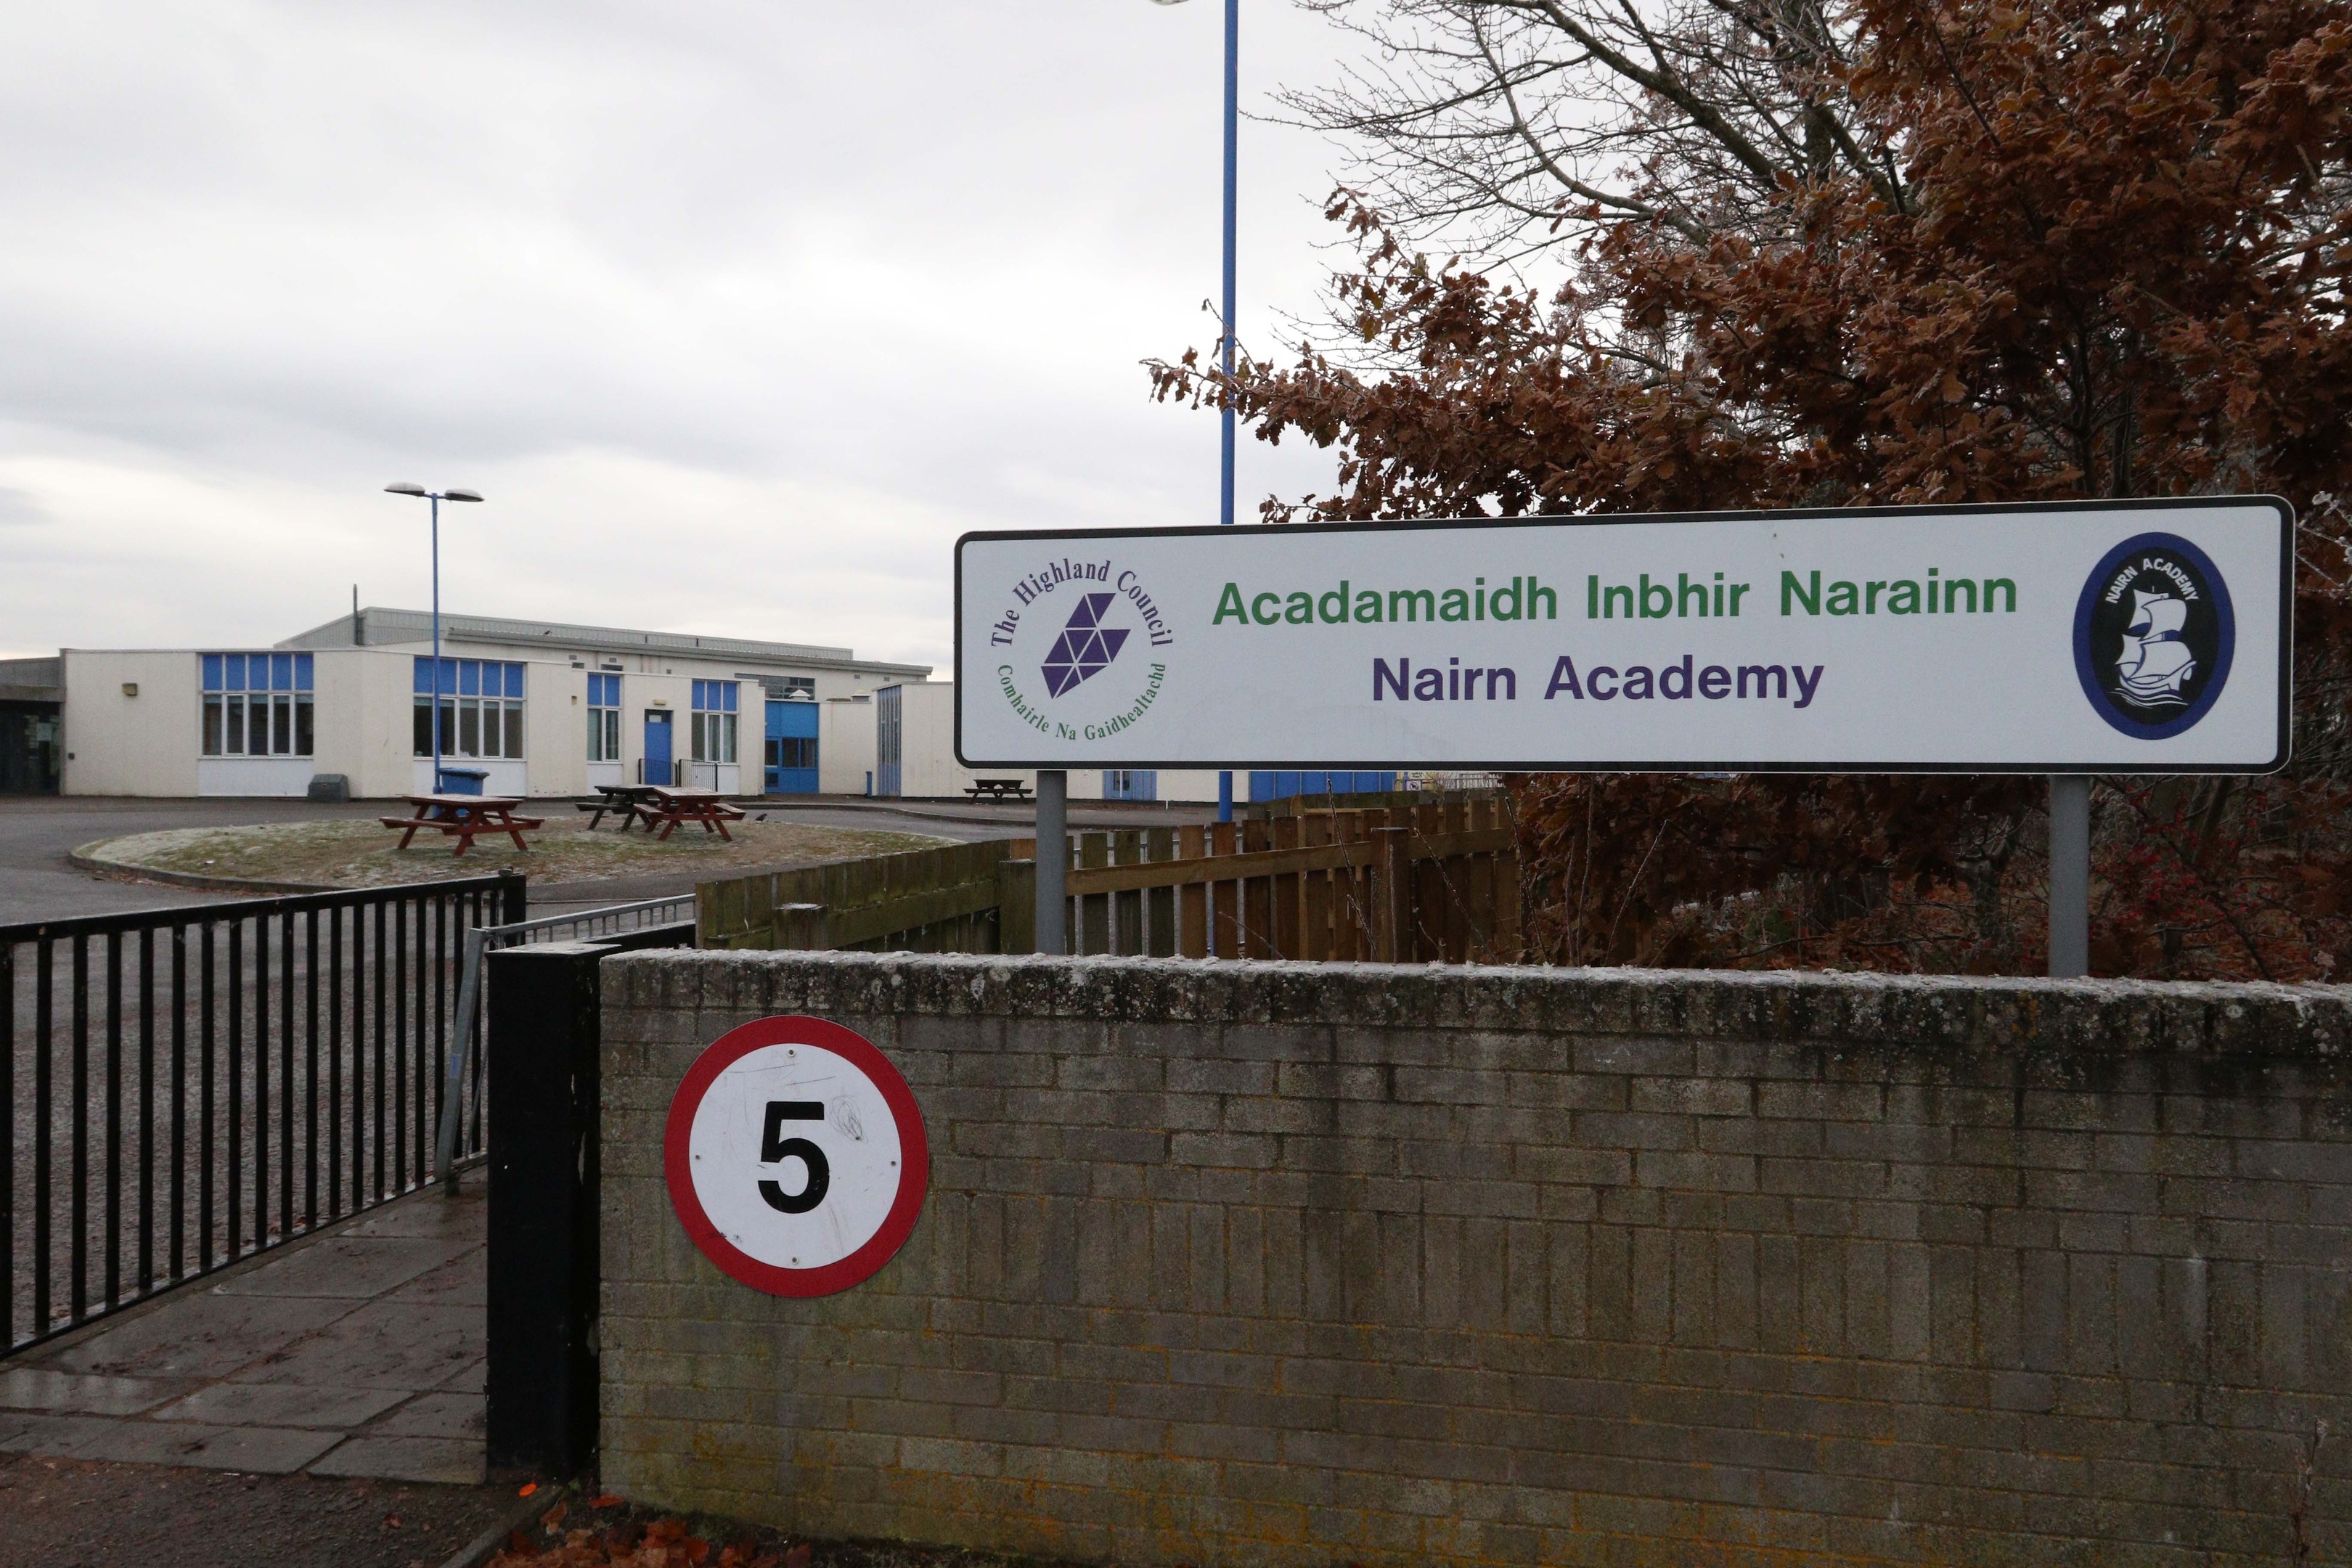 Nairn Academy